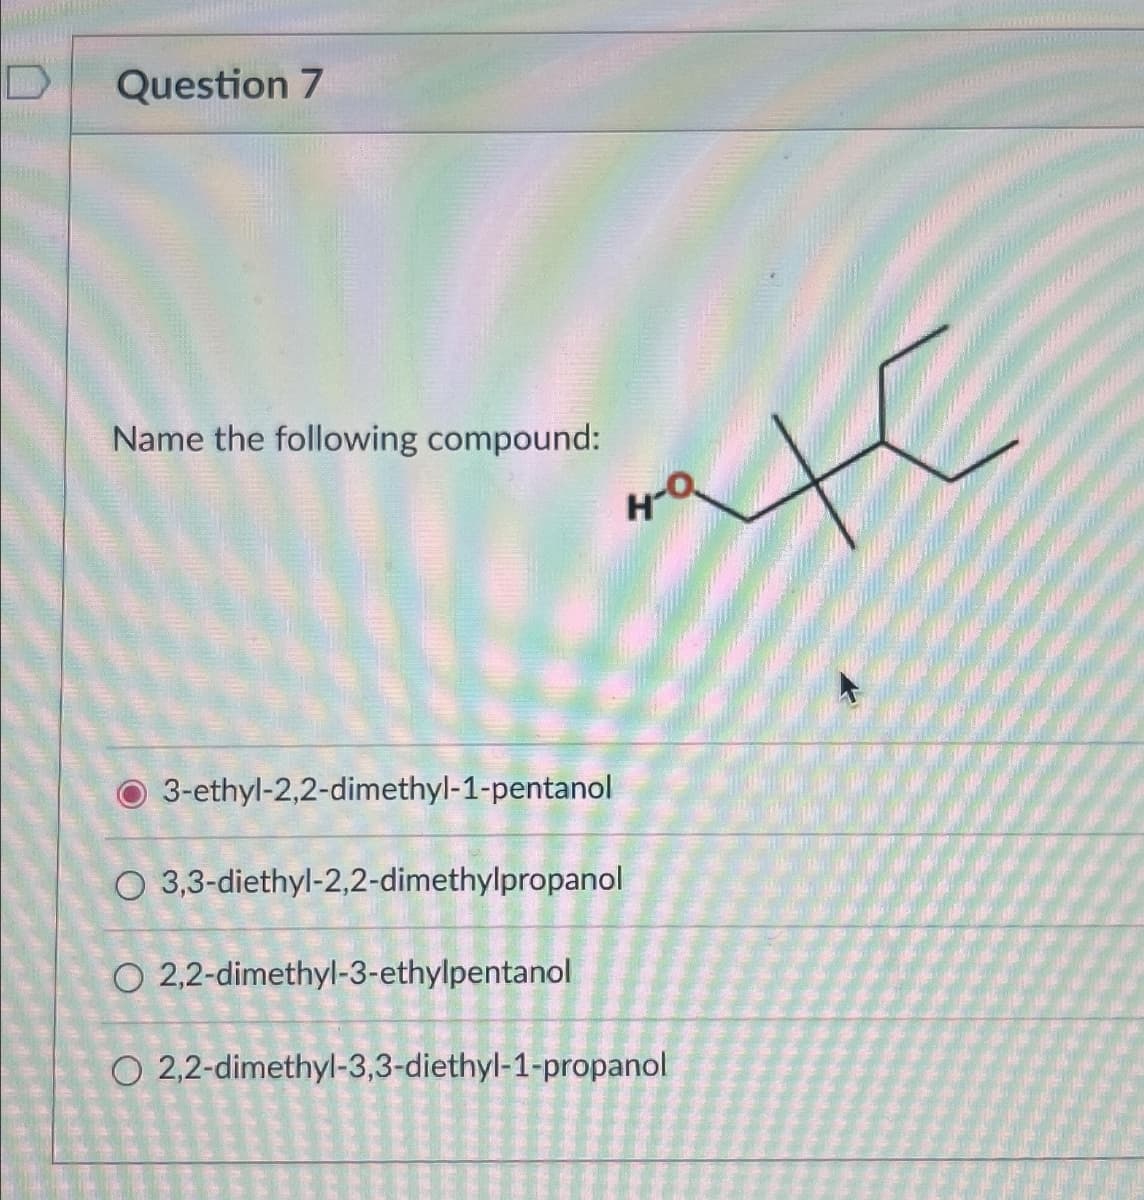 Question 7
Name the following compound:
H-Q
3-ethyl-2,2-dimethyl-1-pentanol
O 3,3-diethyl-2,2-dimethylpropanol
O2,2-dimethyl-3-ethylpentanol
O2,2-dimethyl-3,3-diethyl-1-propanol